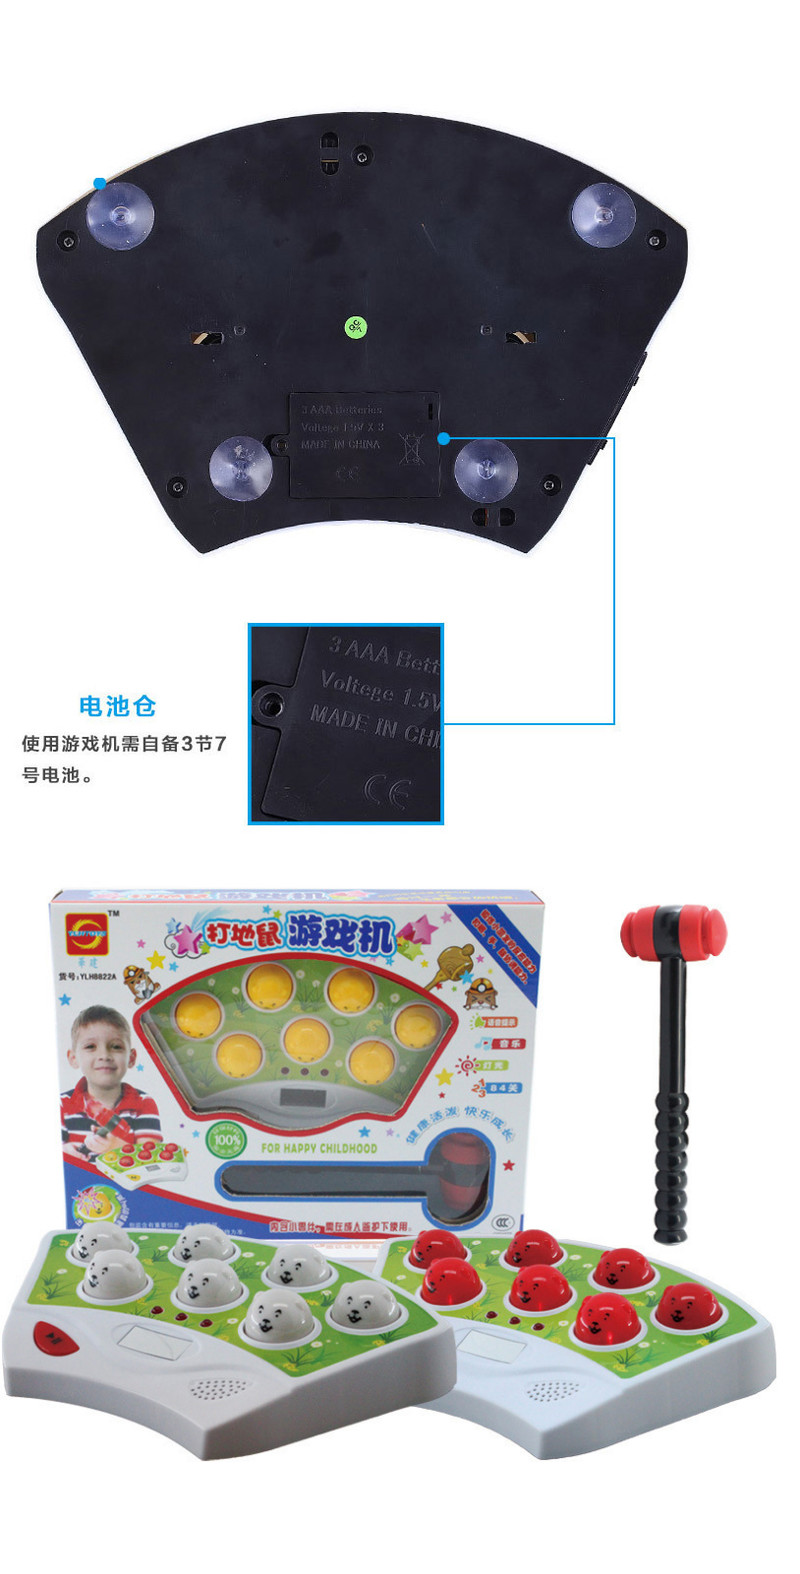 普润 经典电动音乐打地鼠儿童益智游戏机婴儿健身会唱歌敲击玩具3-7岁 YLH8822A 。